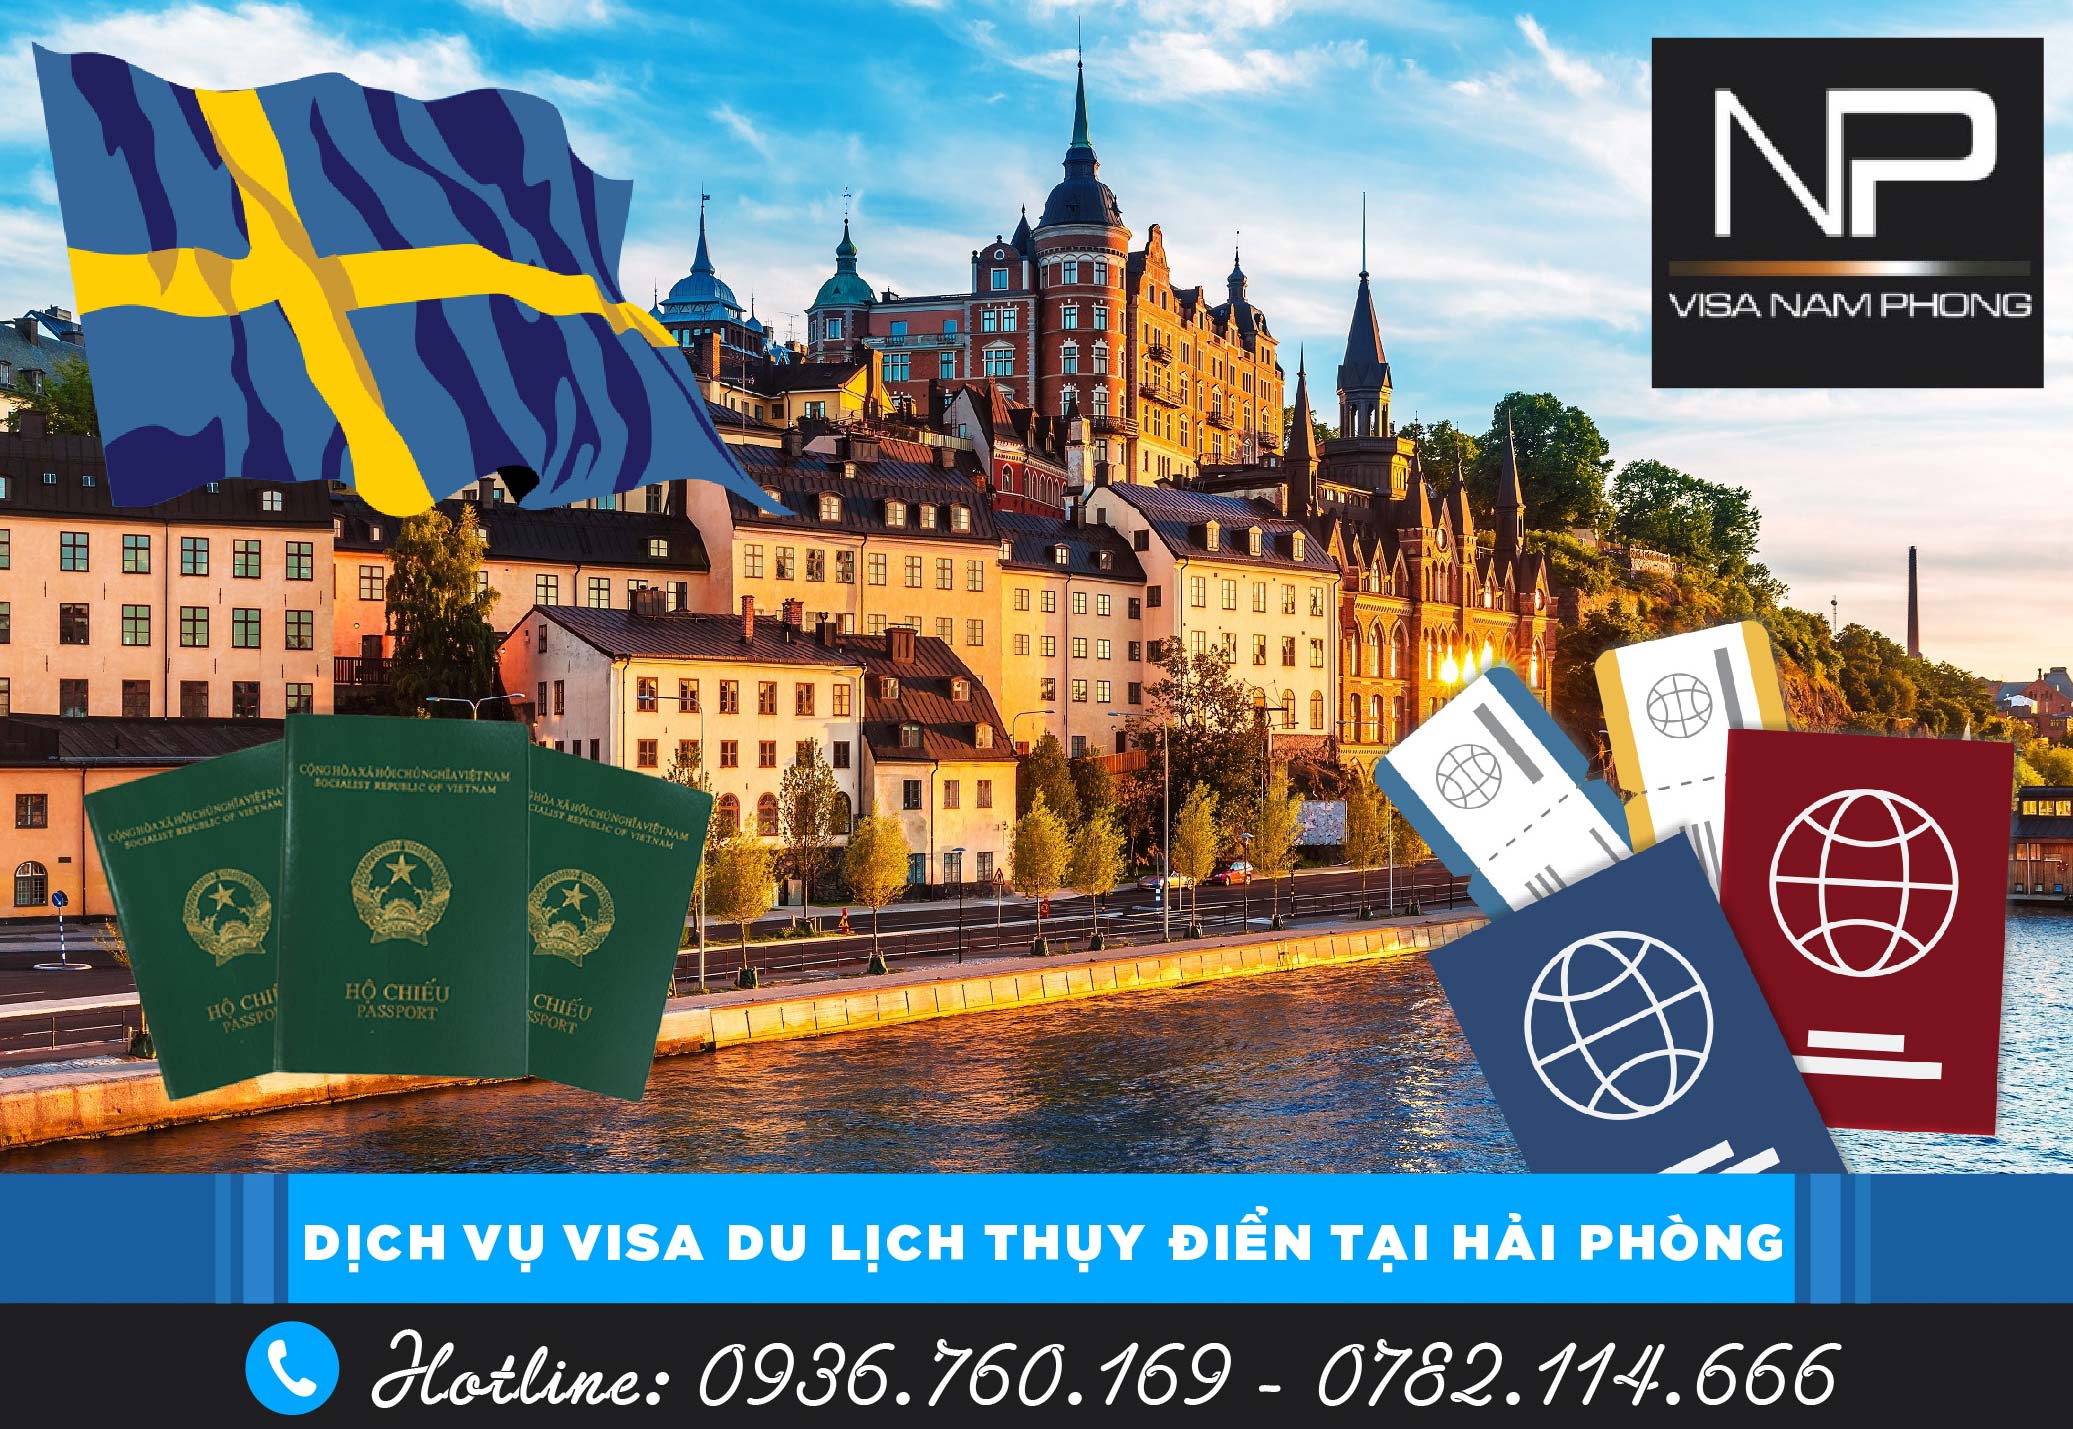 Dịch vụ visa du lịch Thụy Điển tại Hải Phòng